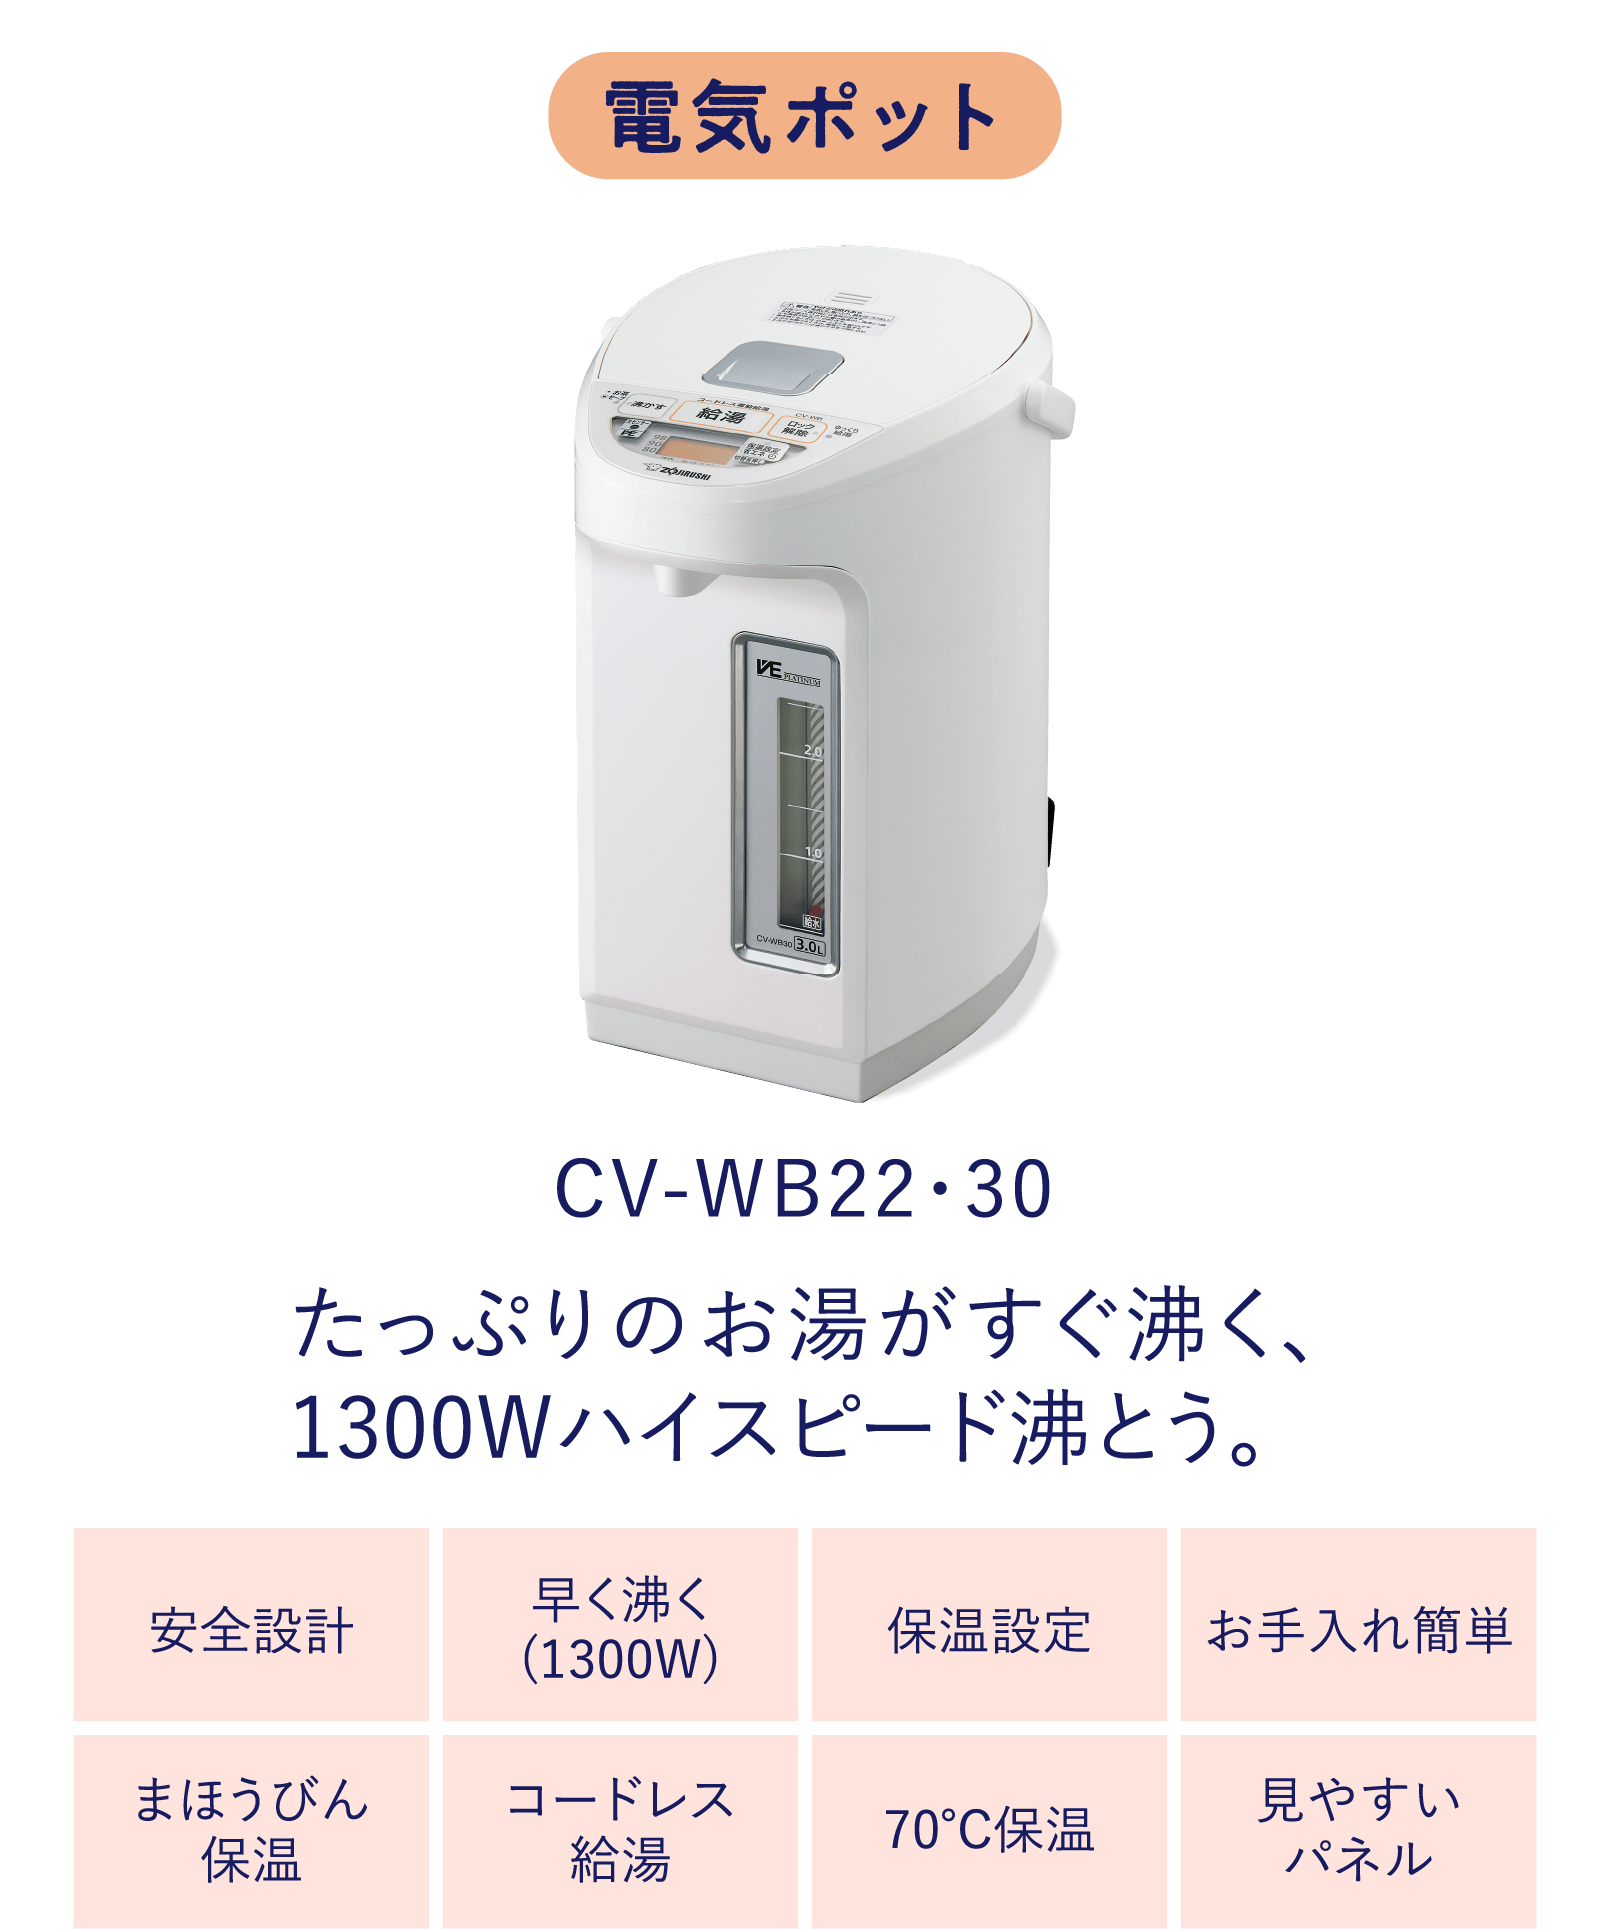 CV-WB22・30